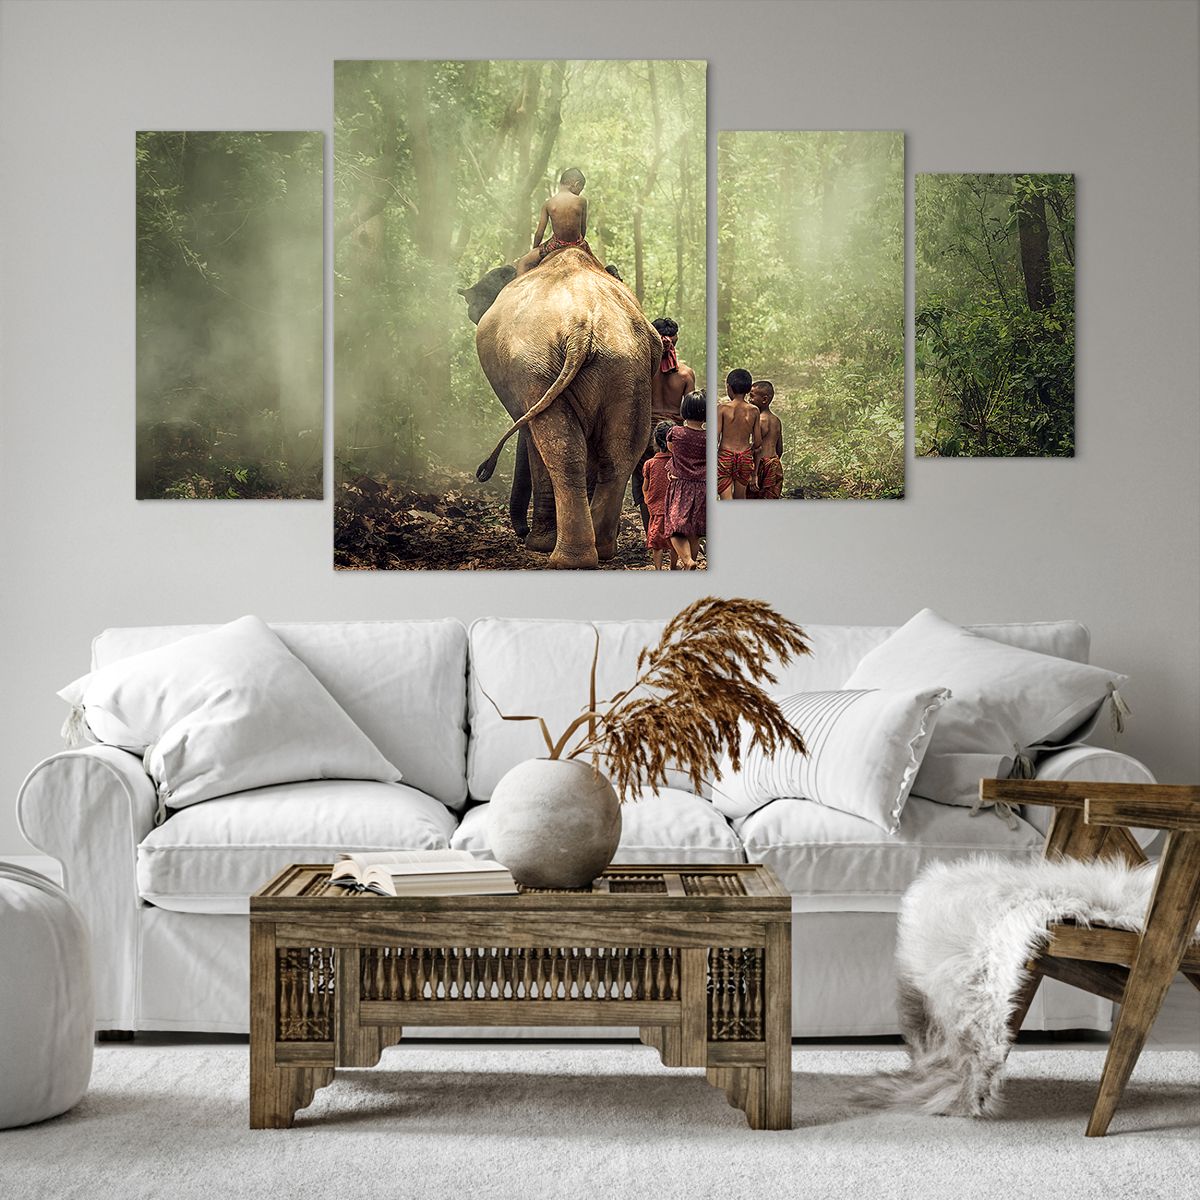 Obrazy na płótnie Krajobraz, Obrazy na płótnie Słoń, Obrazy na płótnie Dżungla, Obrazy na płótnie Azja, Obrazy na płótnie Tajlandia